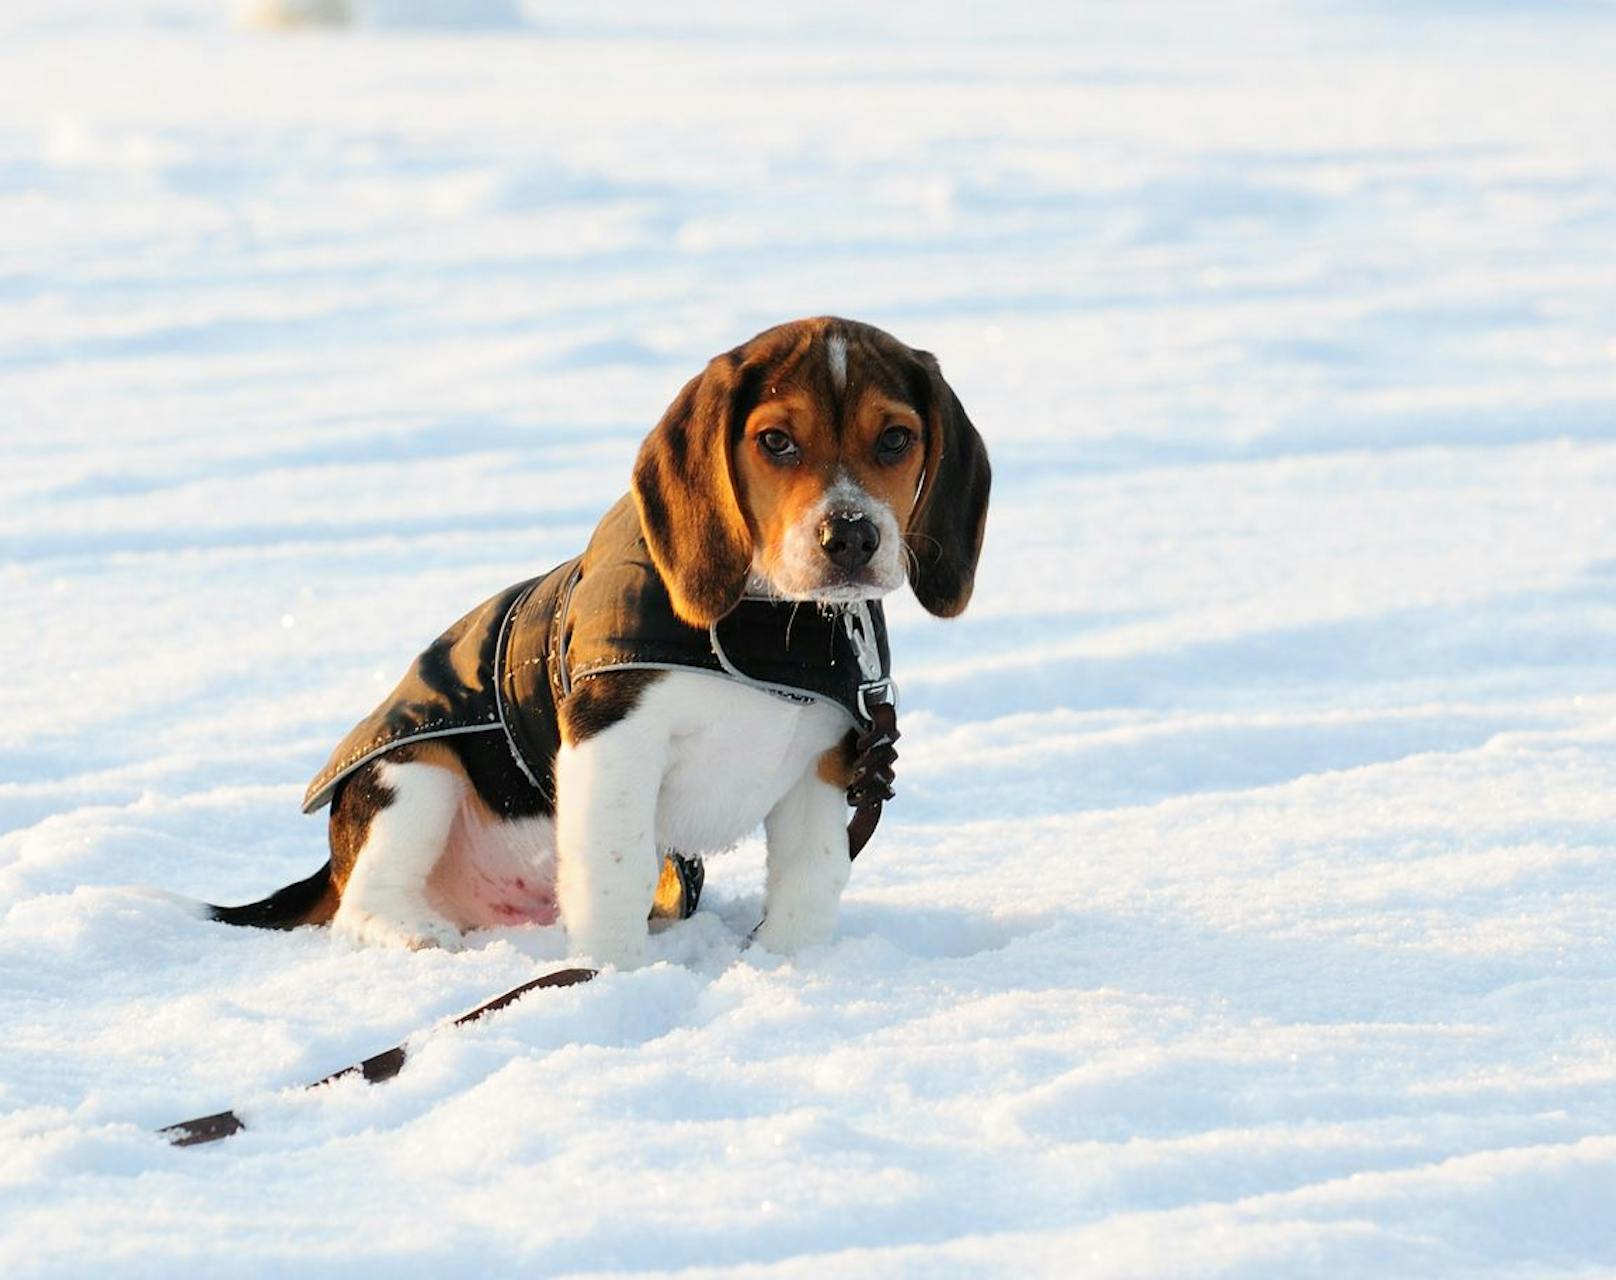 Der Beagle braucht nicht zwangsläufig ein Mäntelchen, weil sie sehr aktiv sind. An der Leine im Tiefschnee jedoch, sollte ein Funktionsmantel nicht schaden.&nbsp;